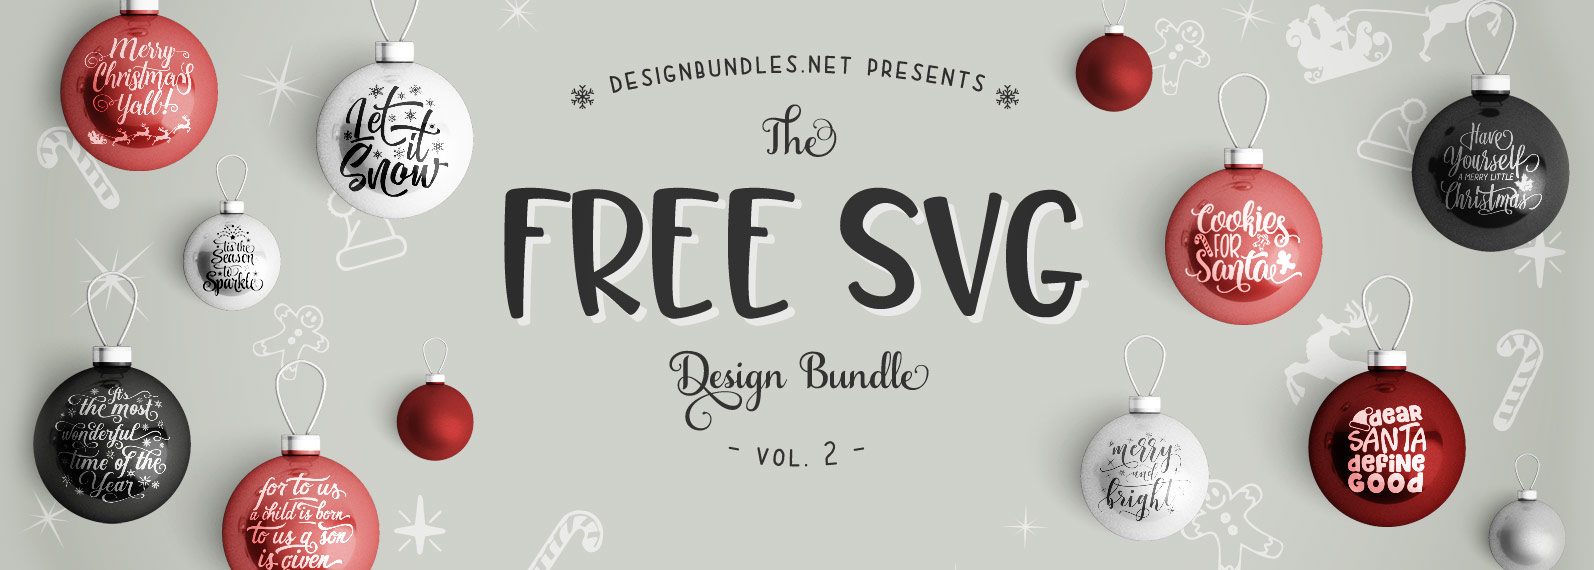 Download Free SVG Bundle II | Design Bundles